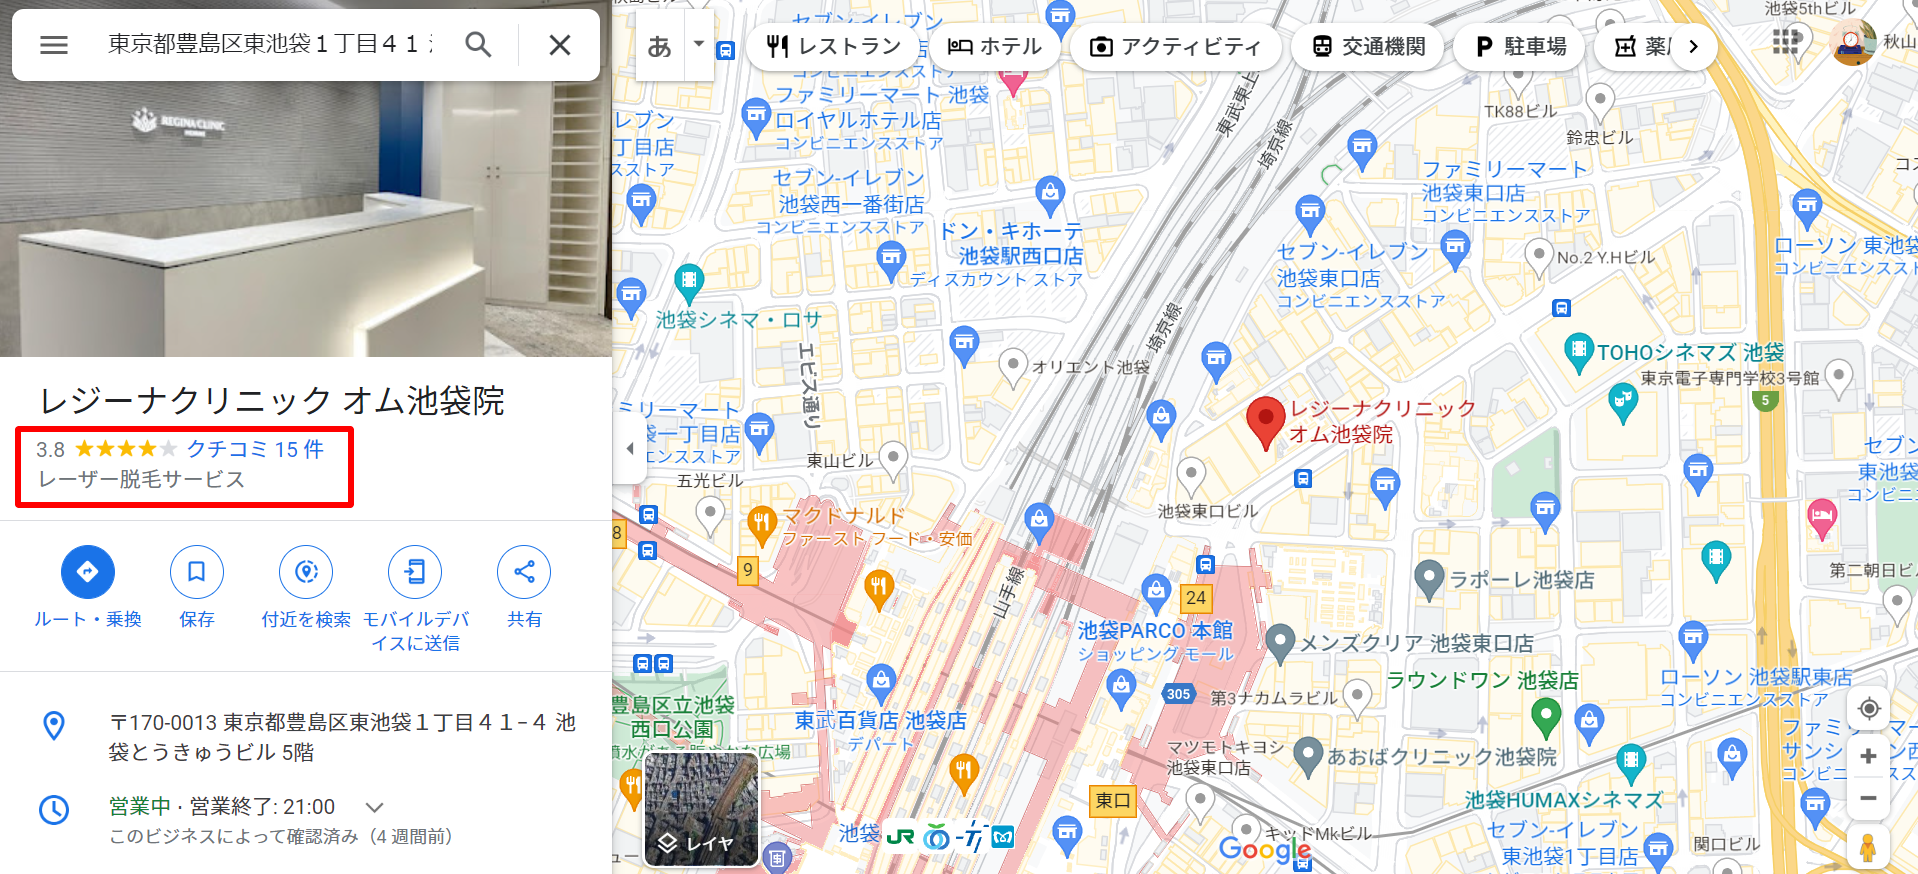 レジーナクリニック-オム池袋院-Google-マップ